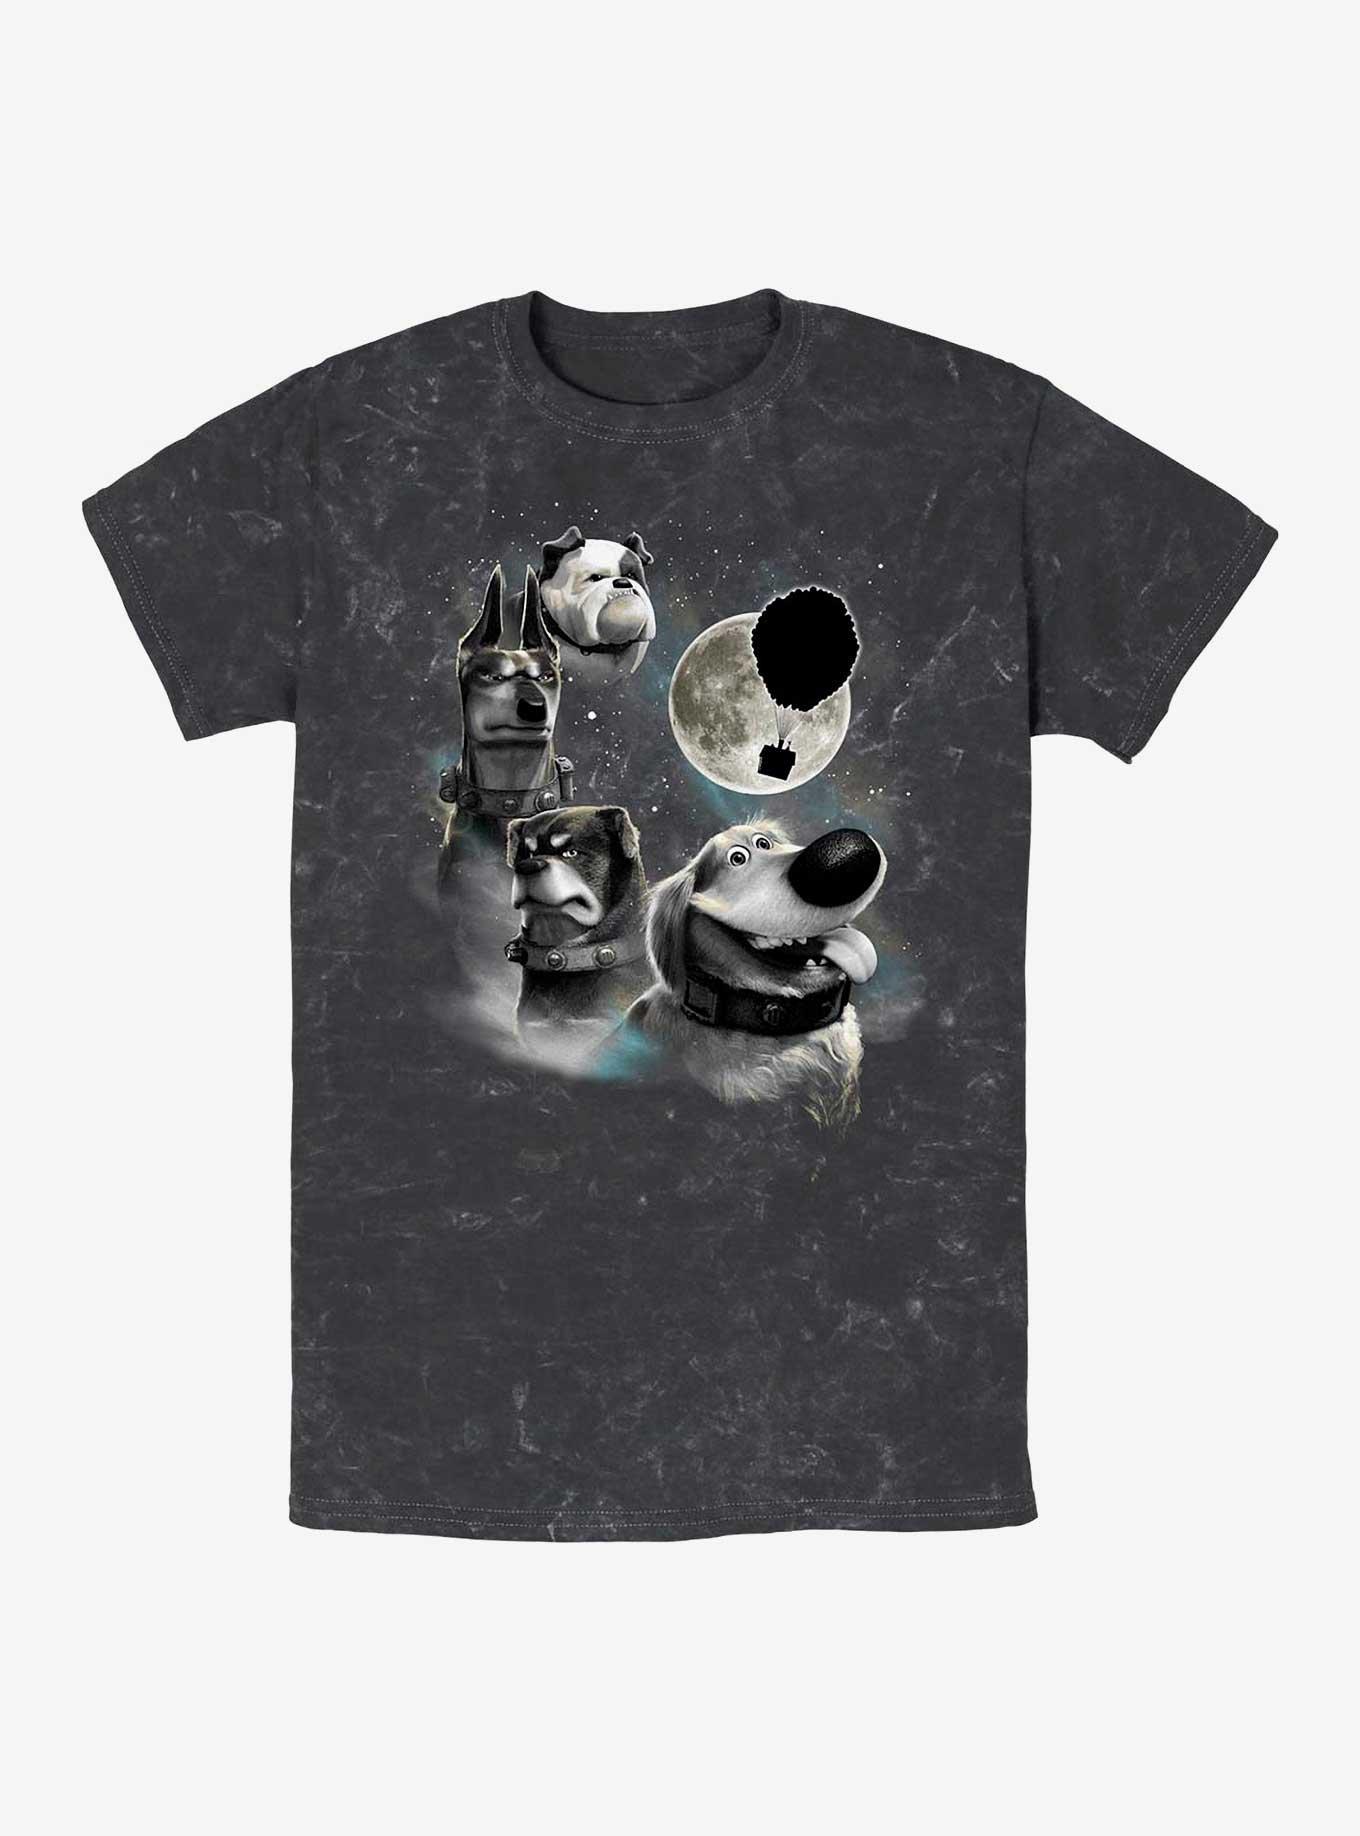 Disney Pixar Up Dug Moon Mineral Wash T-Shirt, BLACK, hi-res